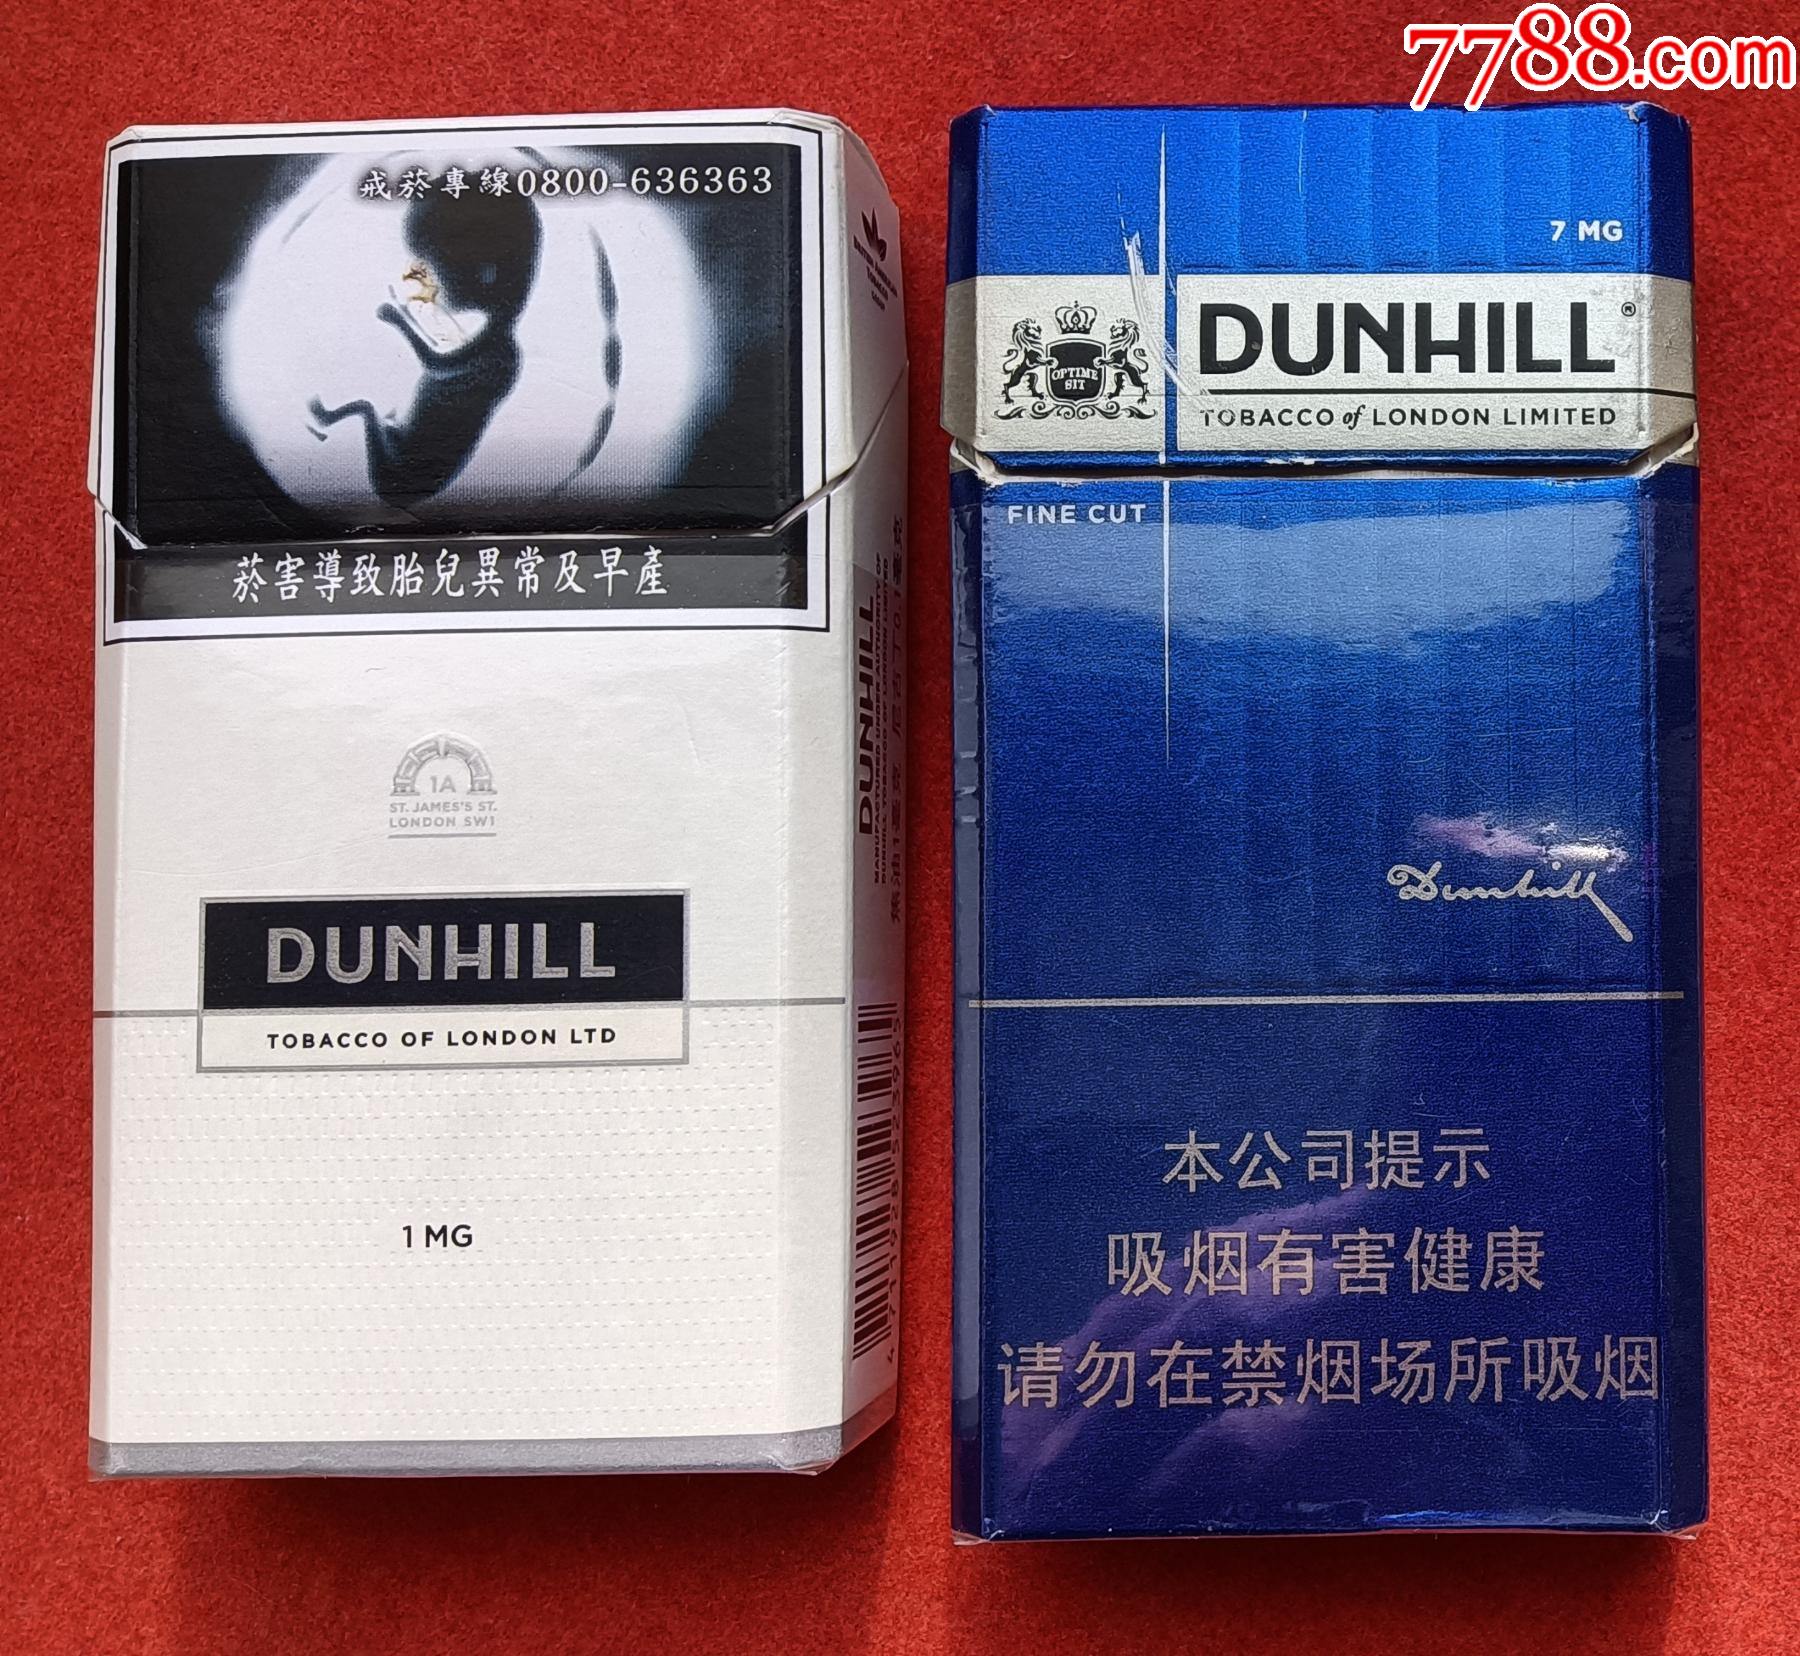 5品99铁盒烟标:紅雙喜·吉祥龙凤,两听不同,50支装,南洋兄弟烟草